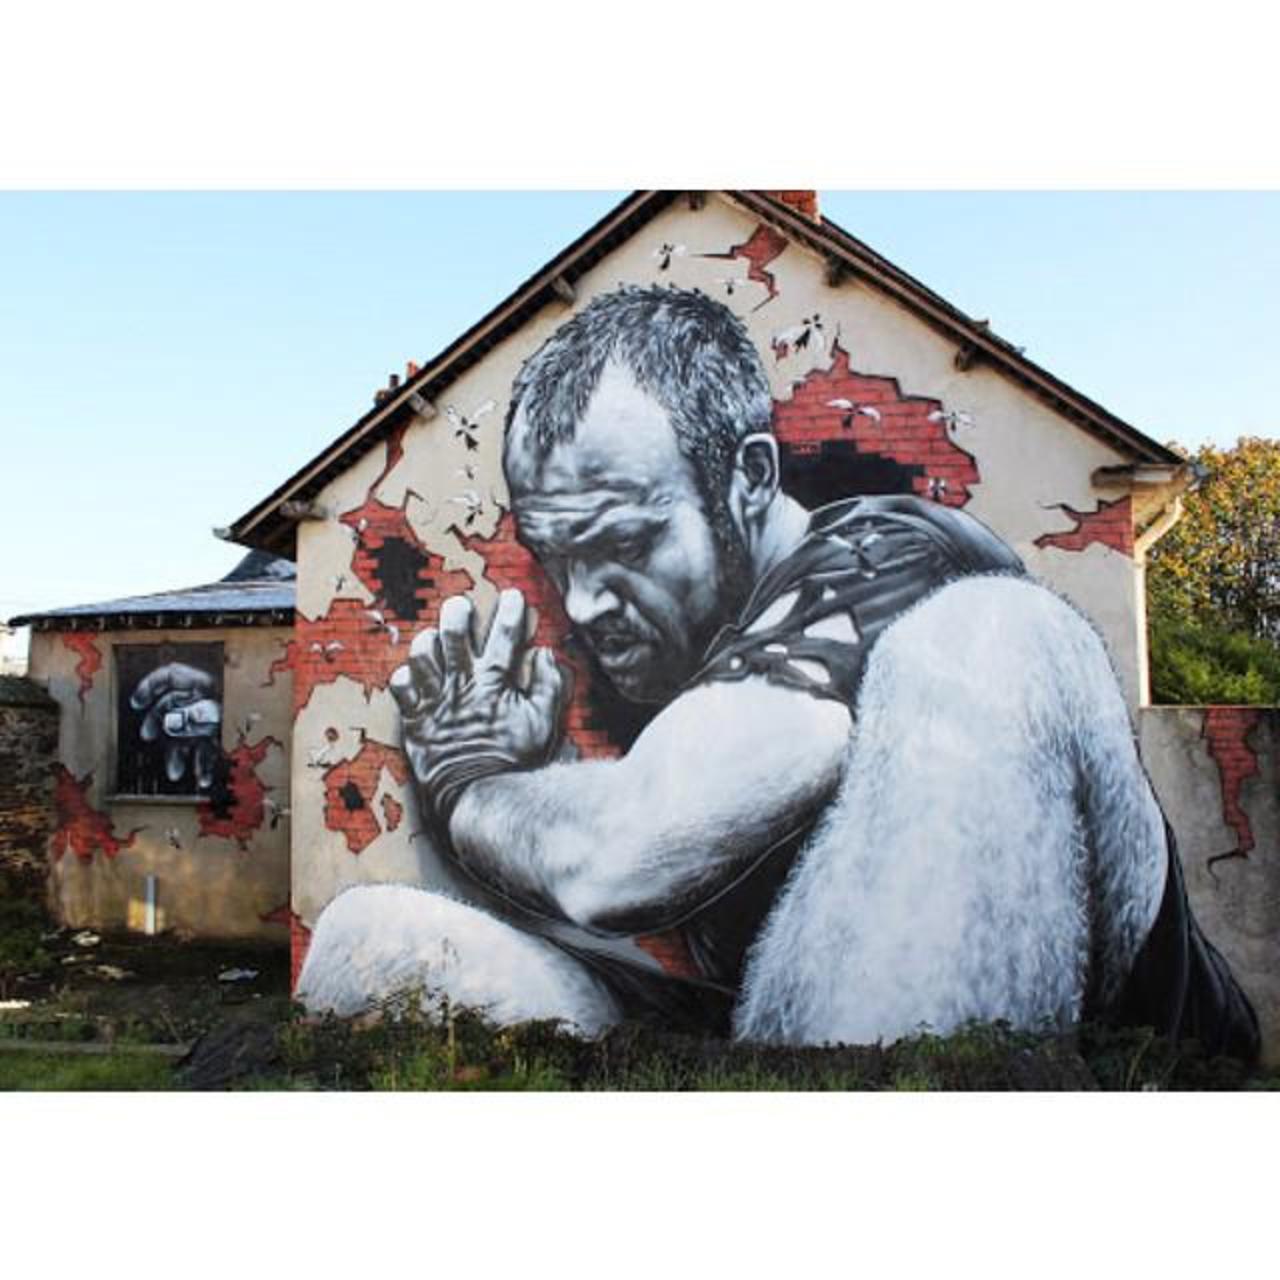 RT @jasonhalle: Love this #streetart #graffiti #art #MTO via @jaxxon and @jasonhalle http://t.co/5az5ttgC2d